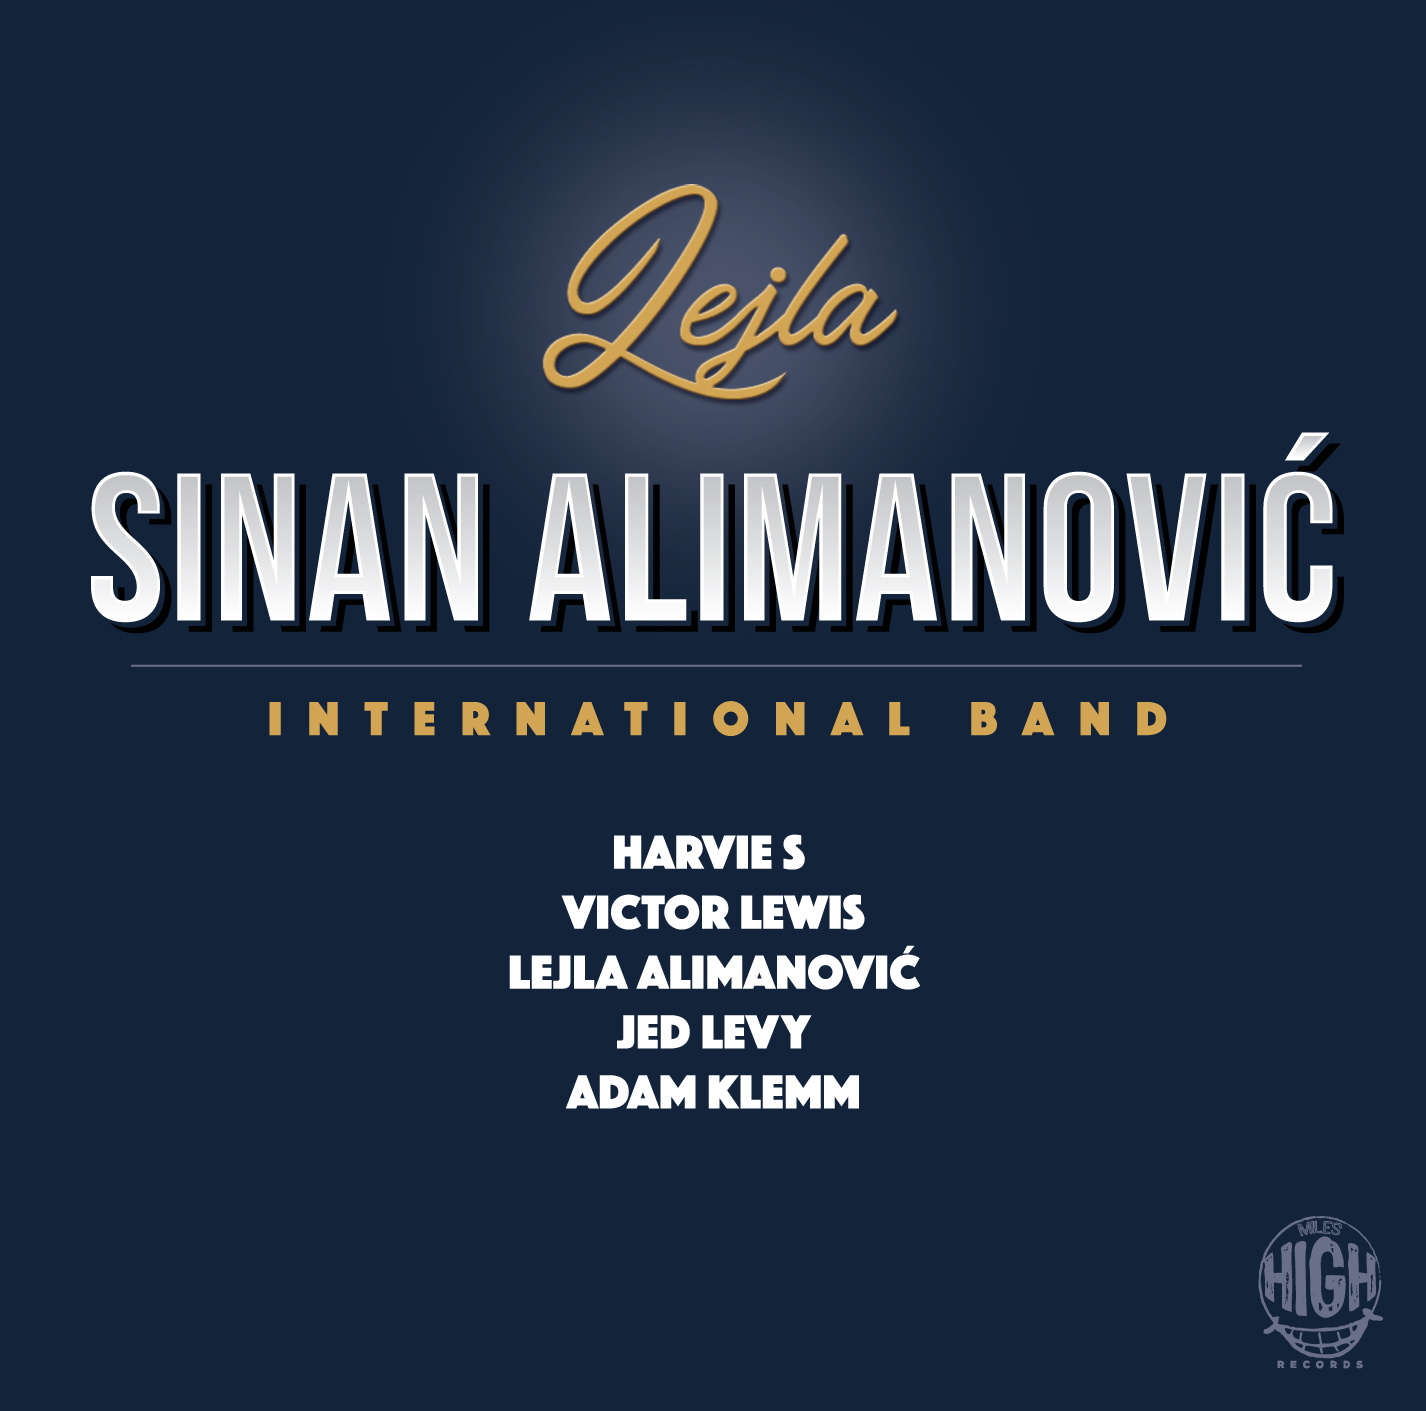  Novi album Sinana Alimanovića objavljen u New Yorku